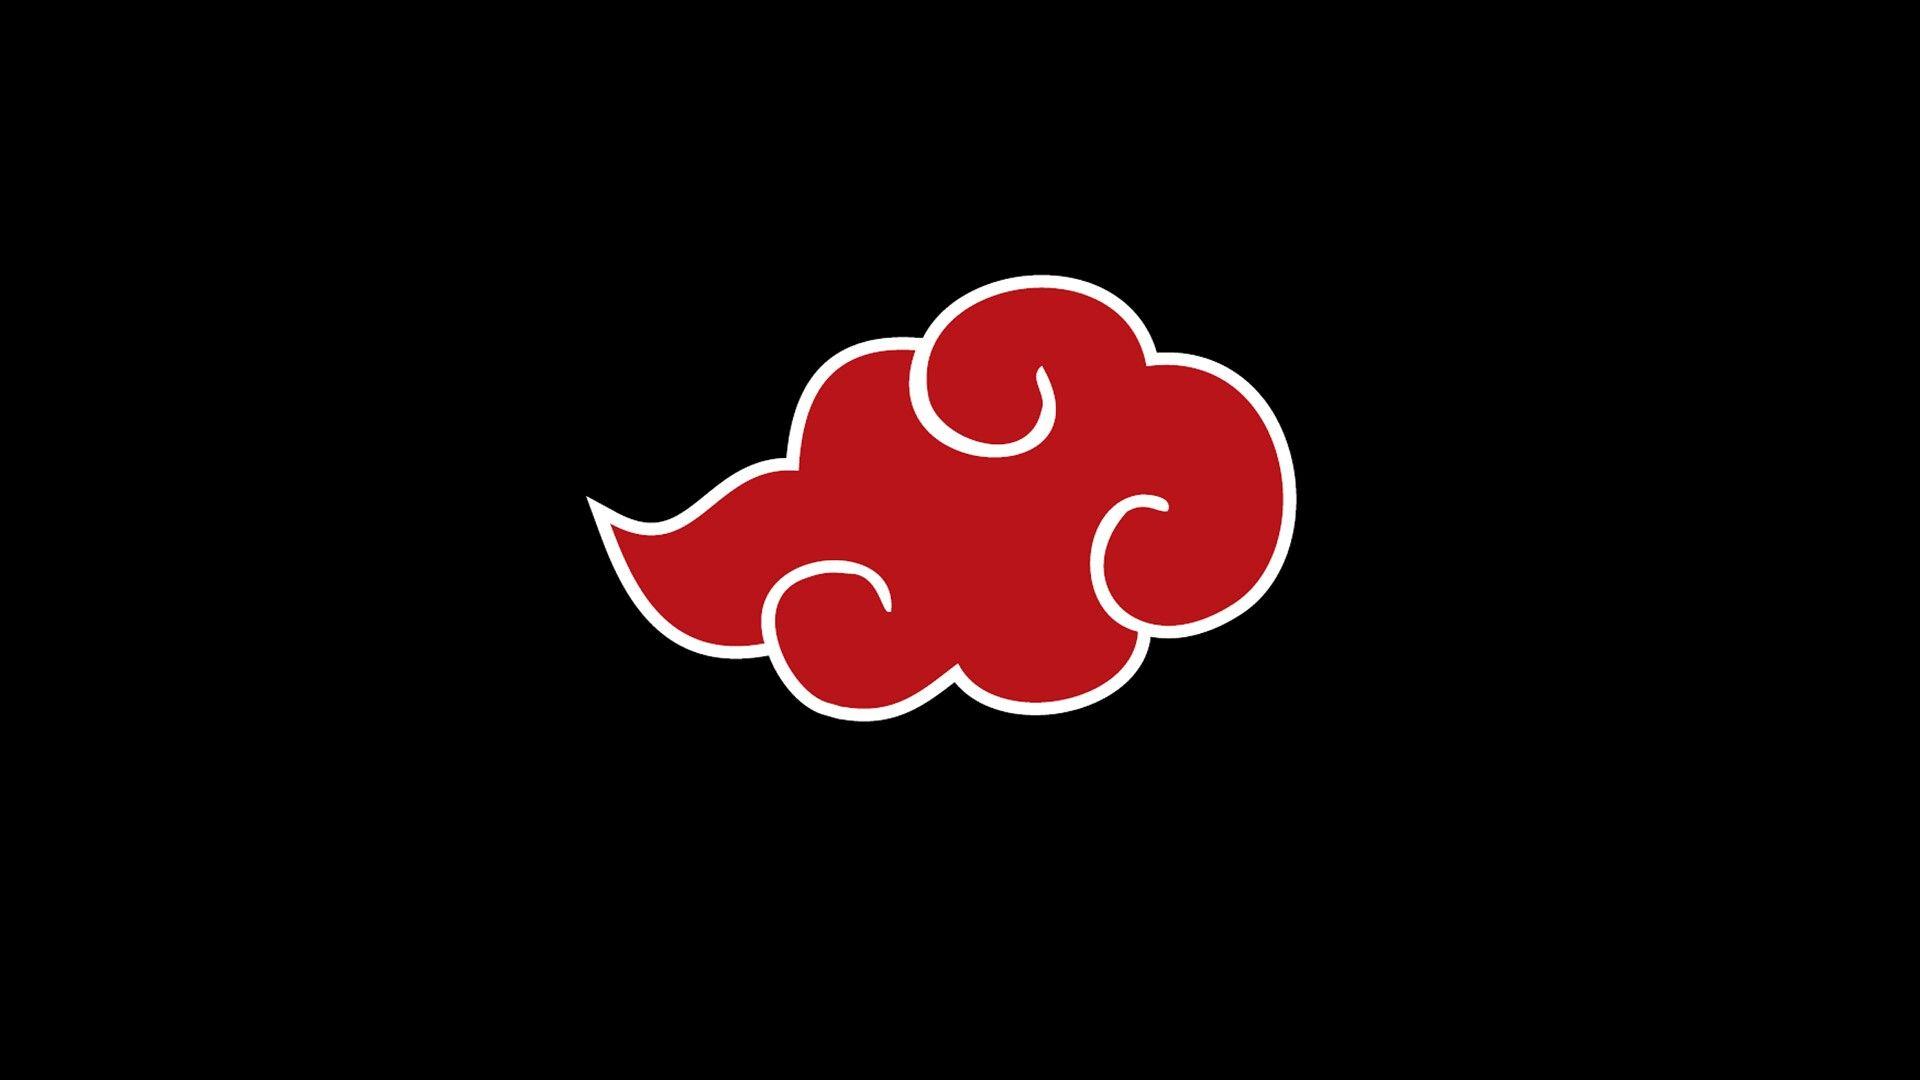 Akatsuki Logo Wallpapers - Top Những Hình Ảnh Đẹp